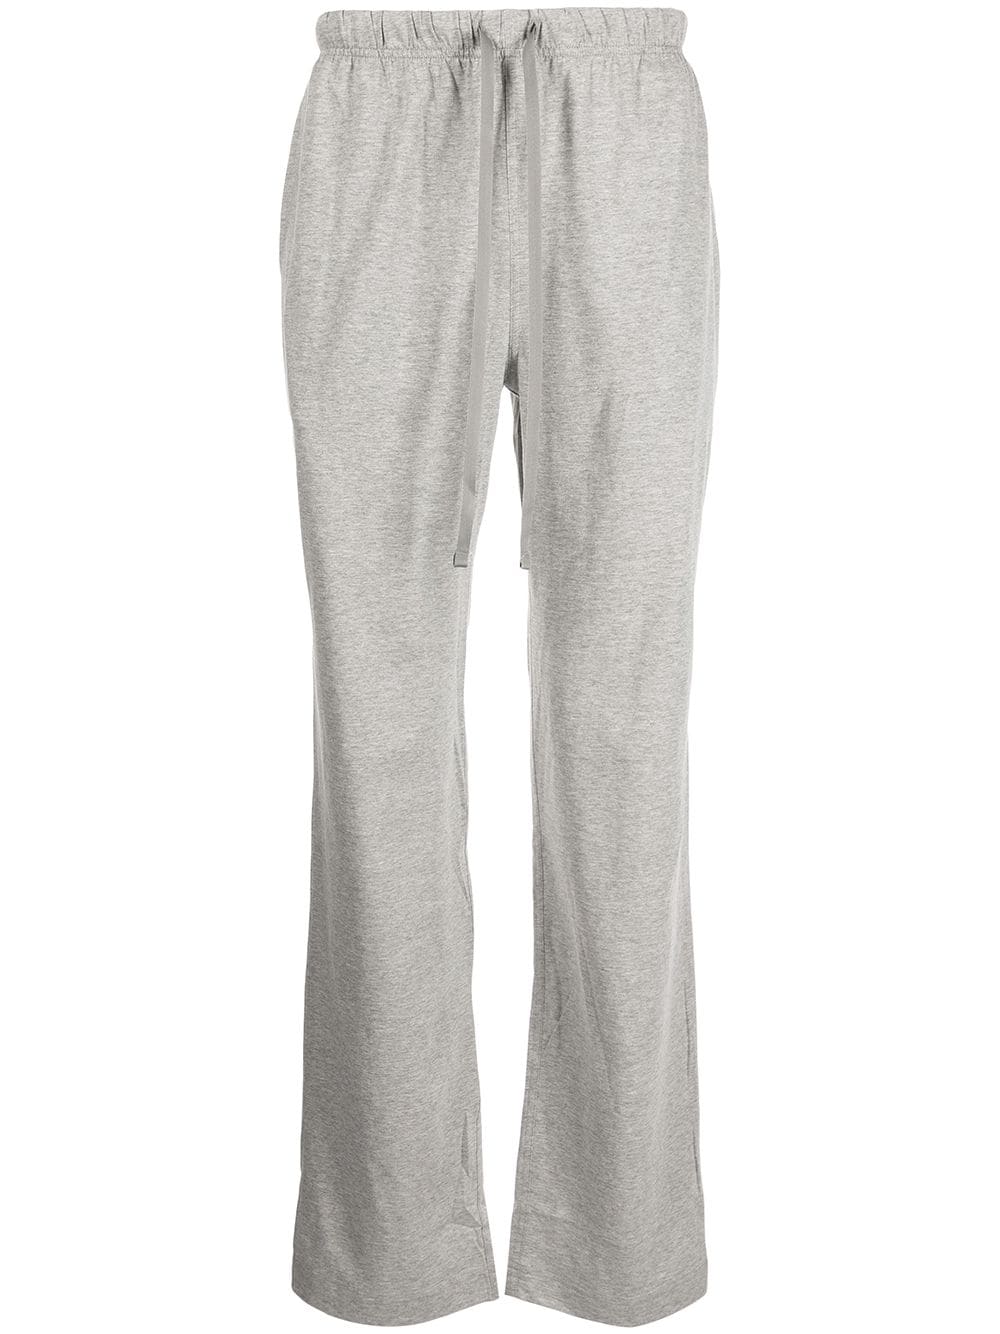 фото Polo ralph lauren пижамные брюки с вышитым логотипом